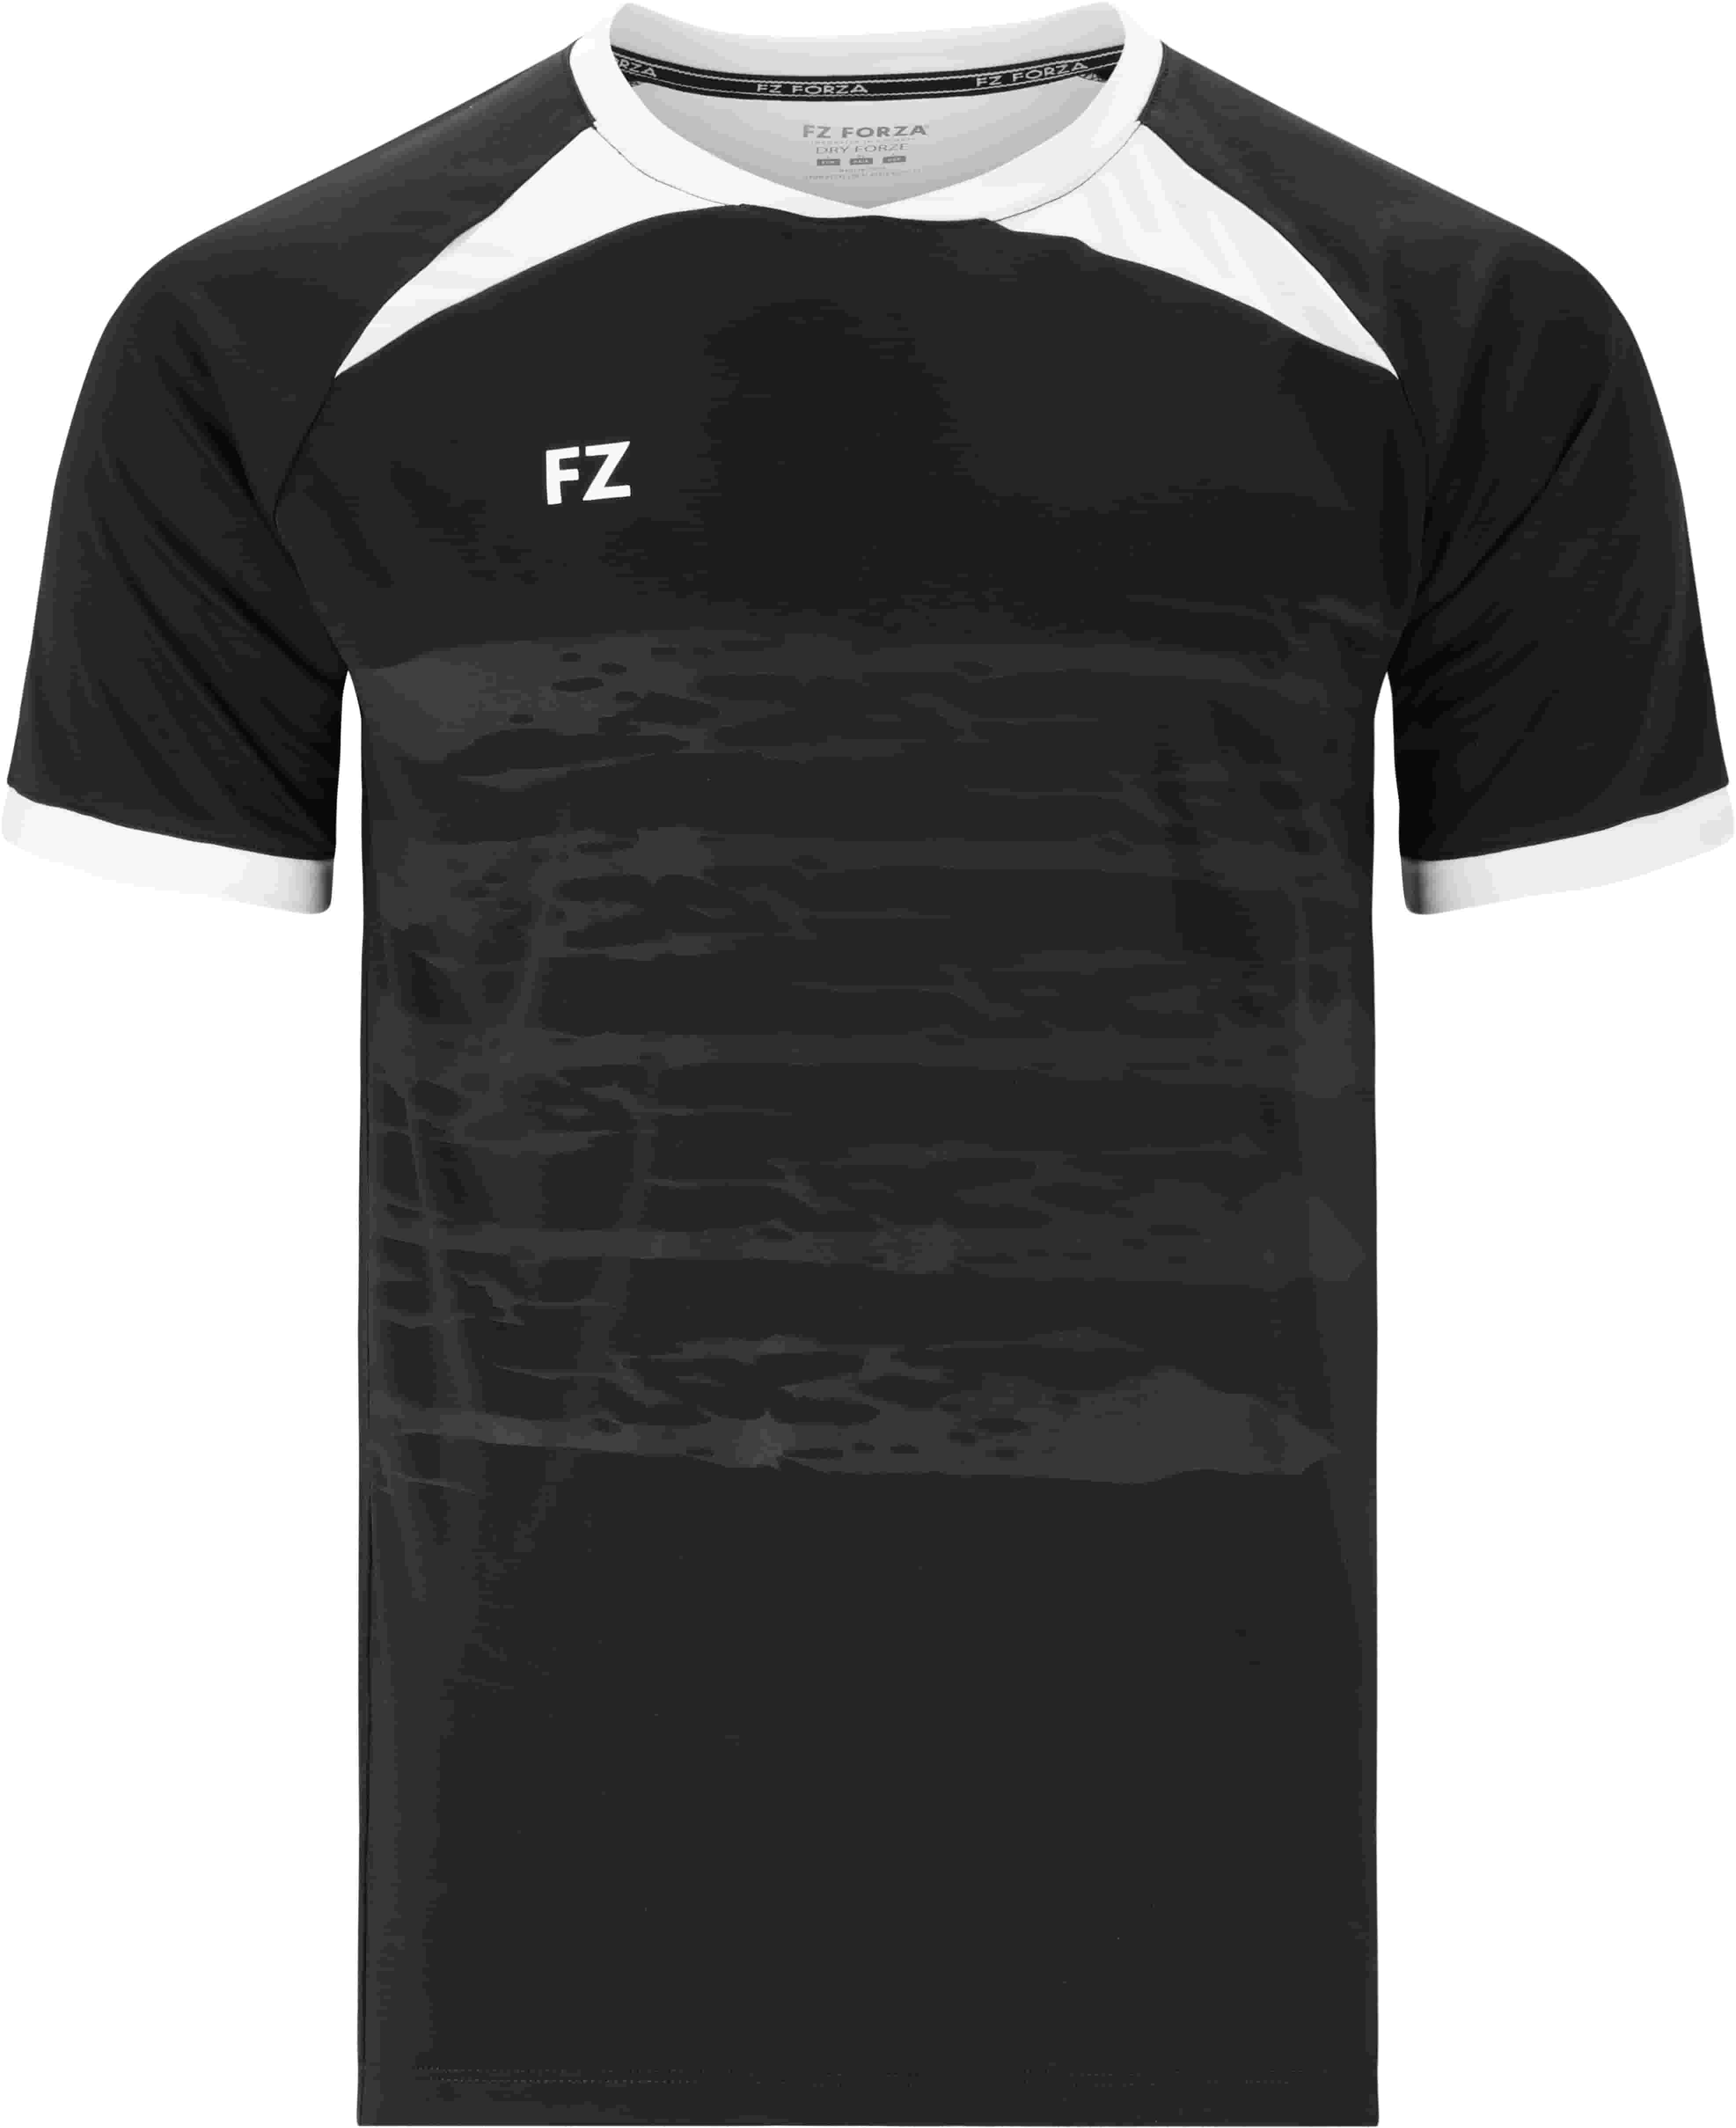 FZ FORZA Agentin M T-Shirt - Schwarz S